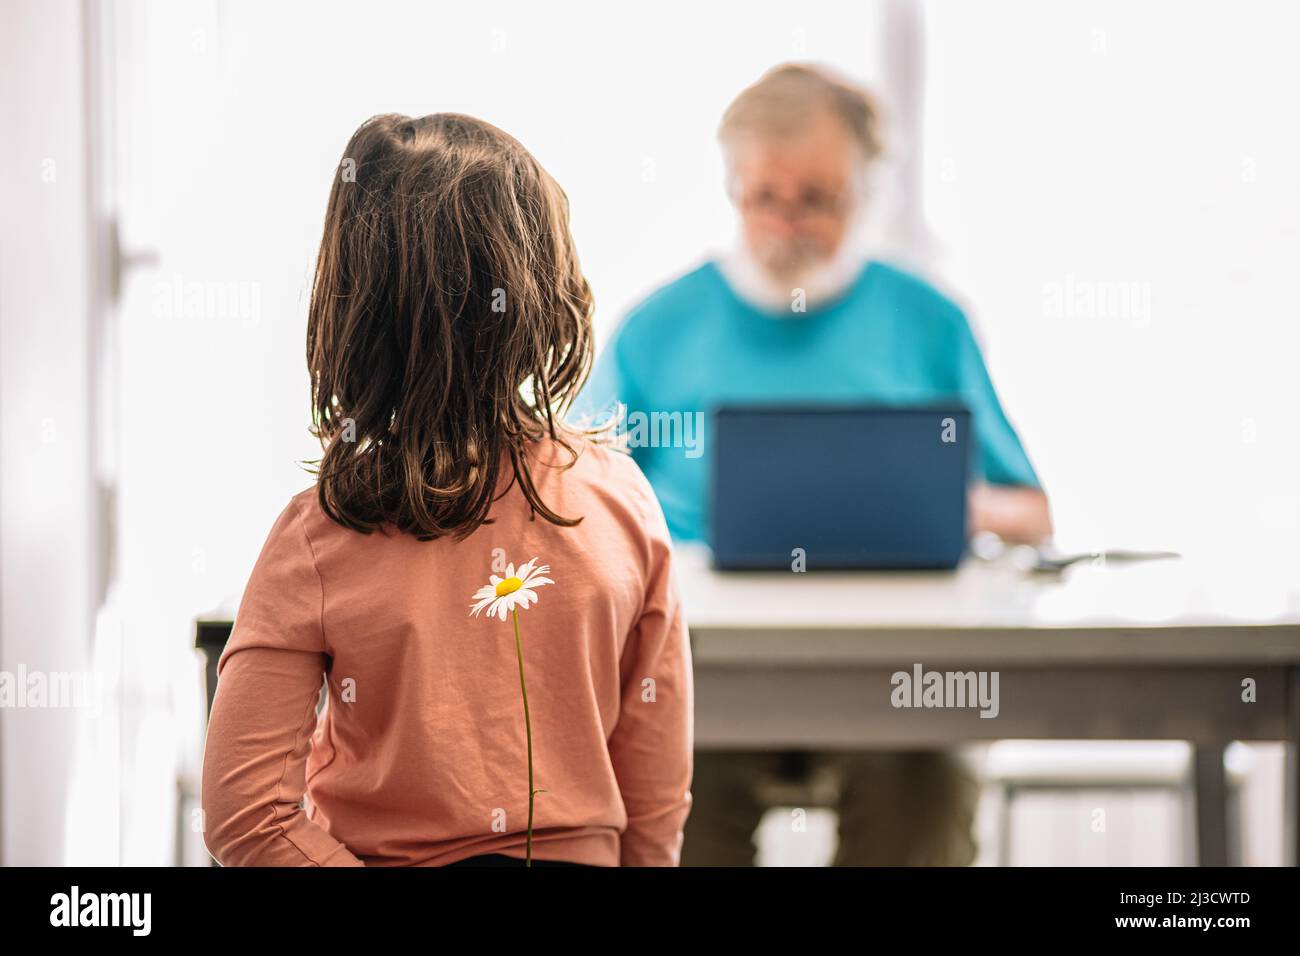 Ragazza irriconoscibile che nasconde camomilla bianca dietro la schiena mentre si alza contro il nonno digitando sul laptop su sfondo sfocato in una stanza luminosa Foto Stock